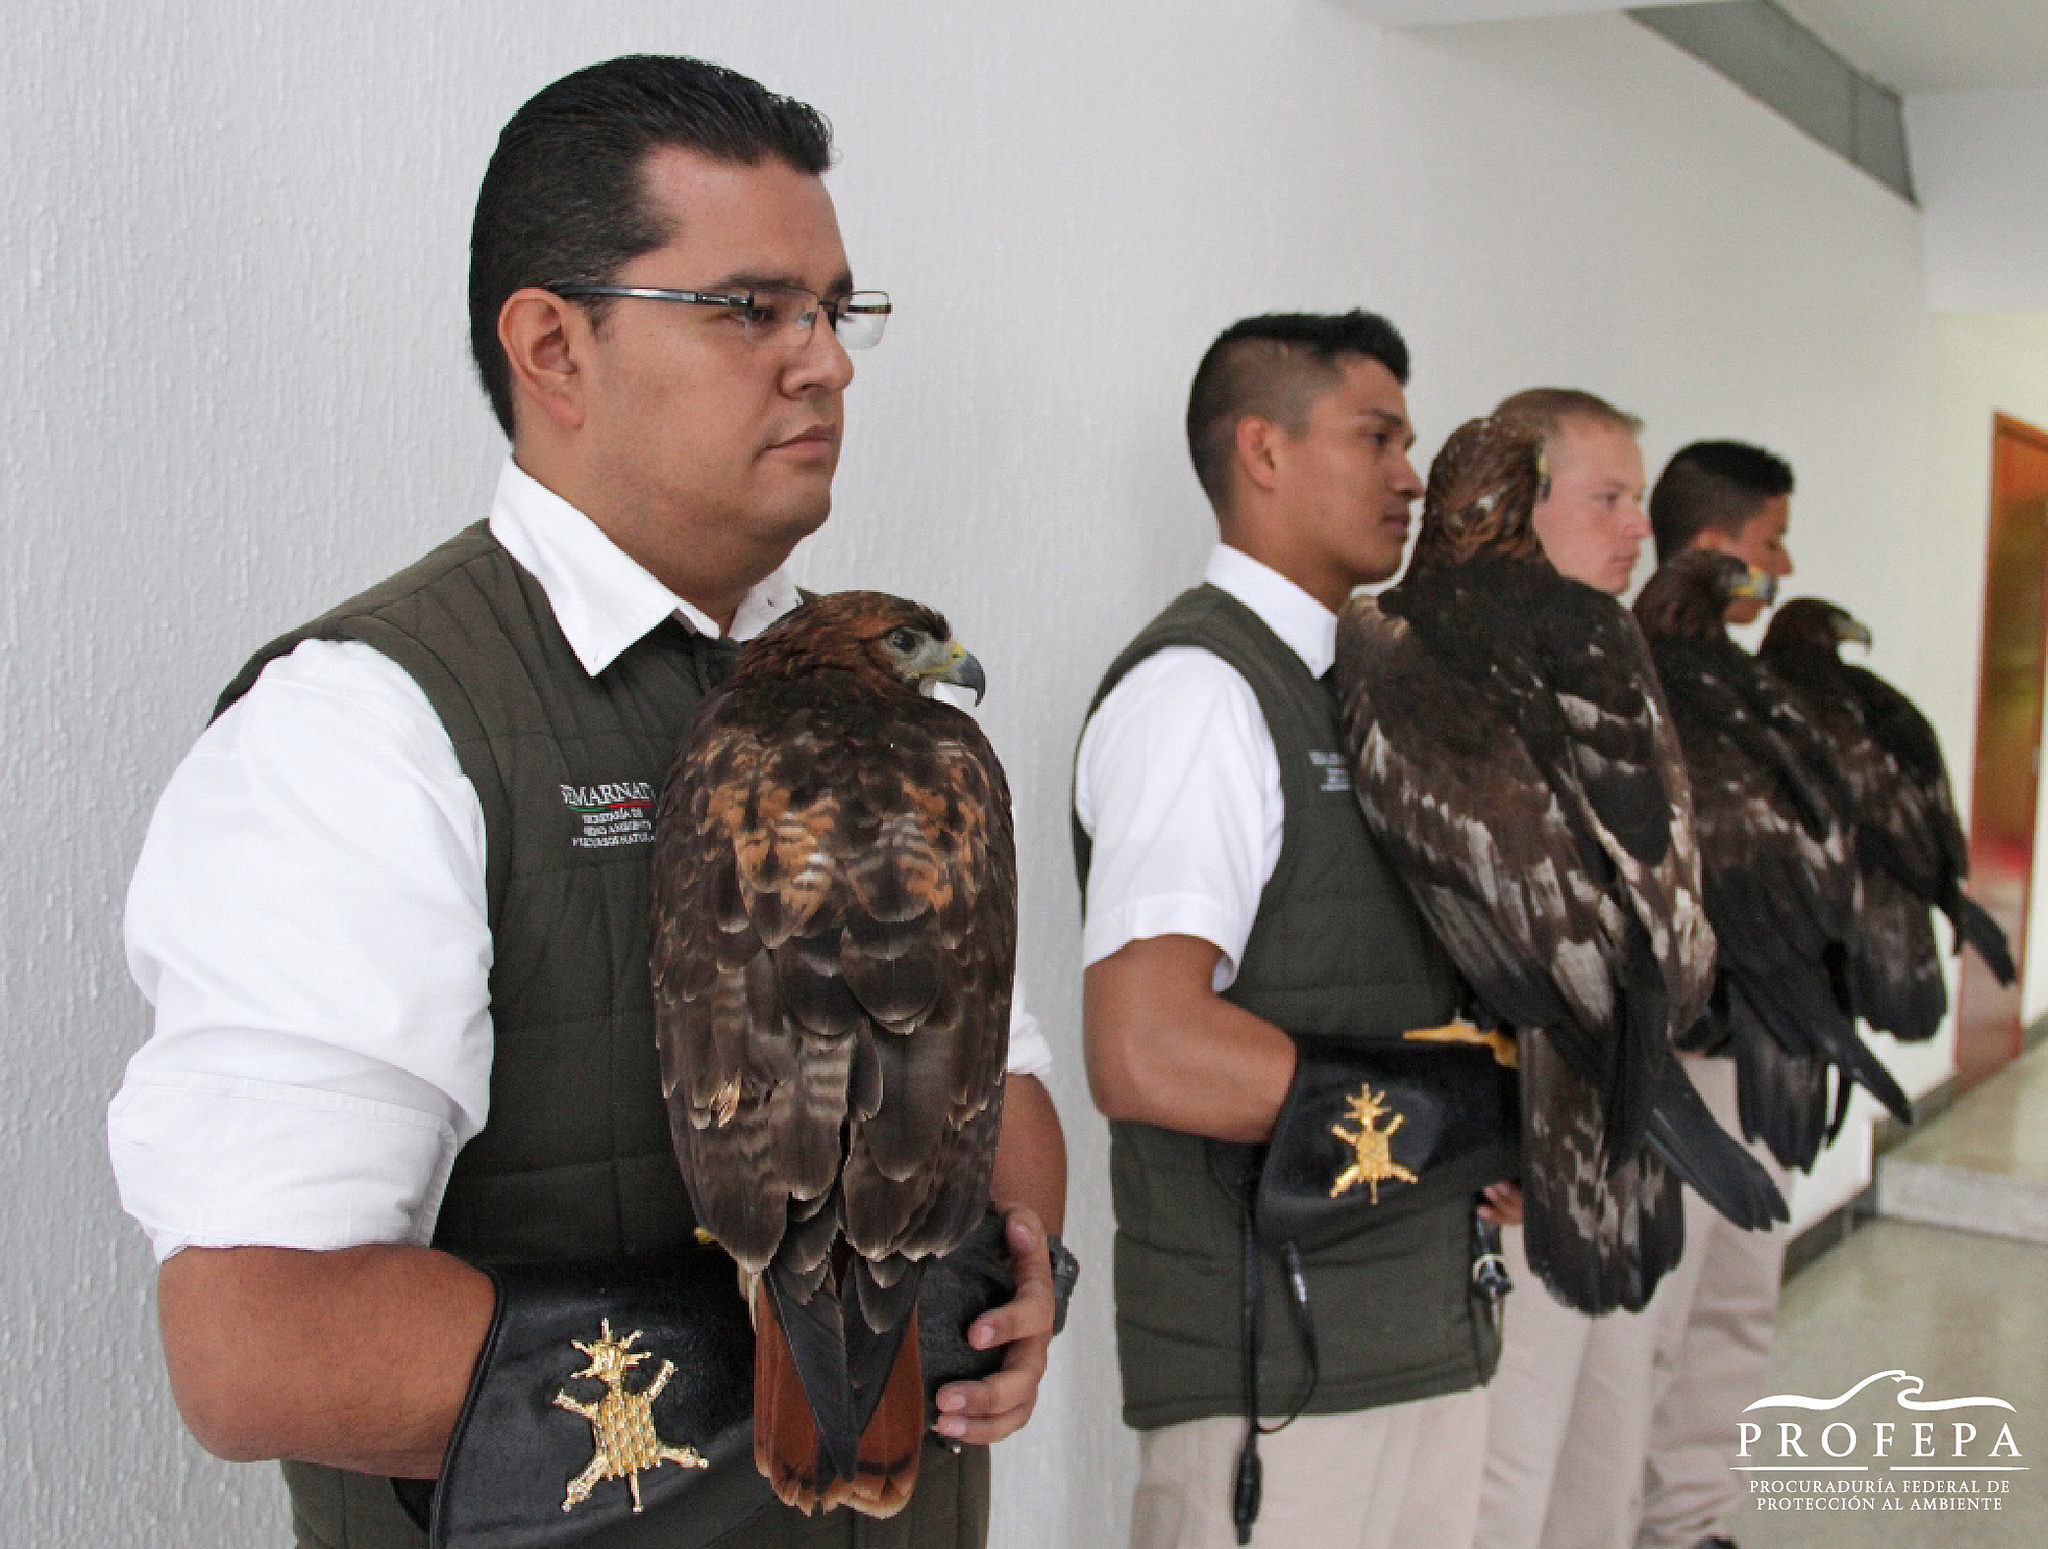 El Centro Nacional de Control y Protección del Águila Real en el H. Colegio Militar será uno de los principales recintos para la conservación del águila real, símbolo patrio y de identidad de todos los mexicanos.
